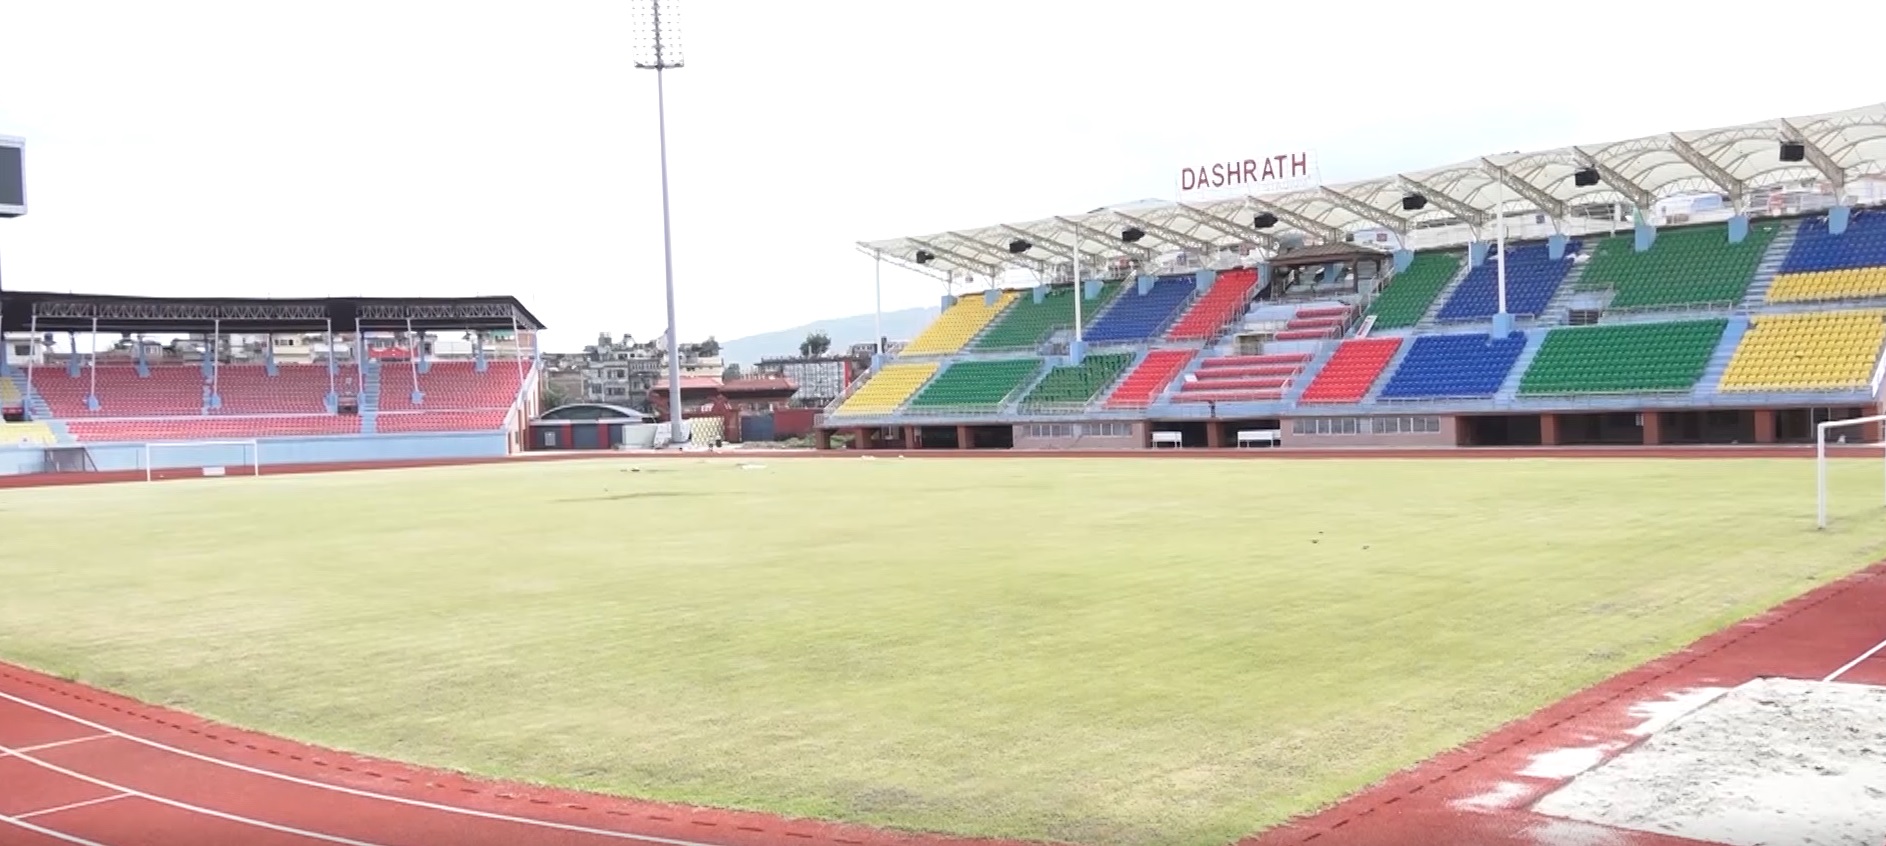 नेपाल सुपर लीग फूटबलमा आजदेखि प्लेअफका खेल शुरु हुँदै